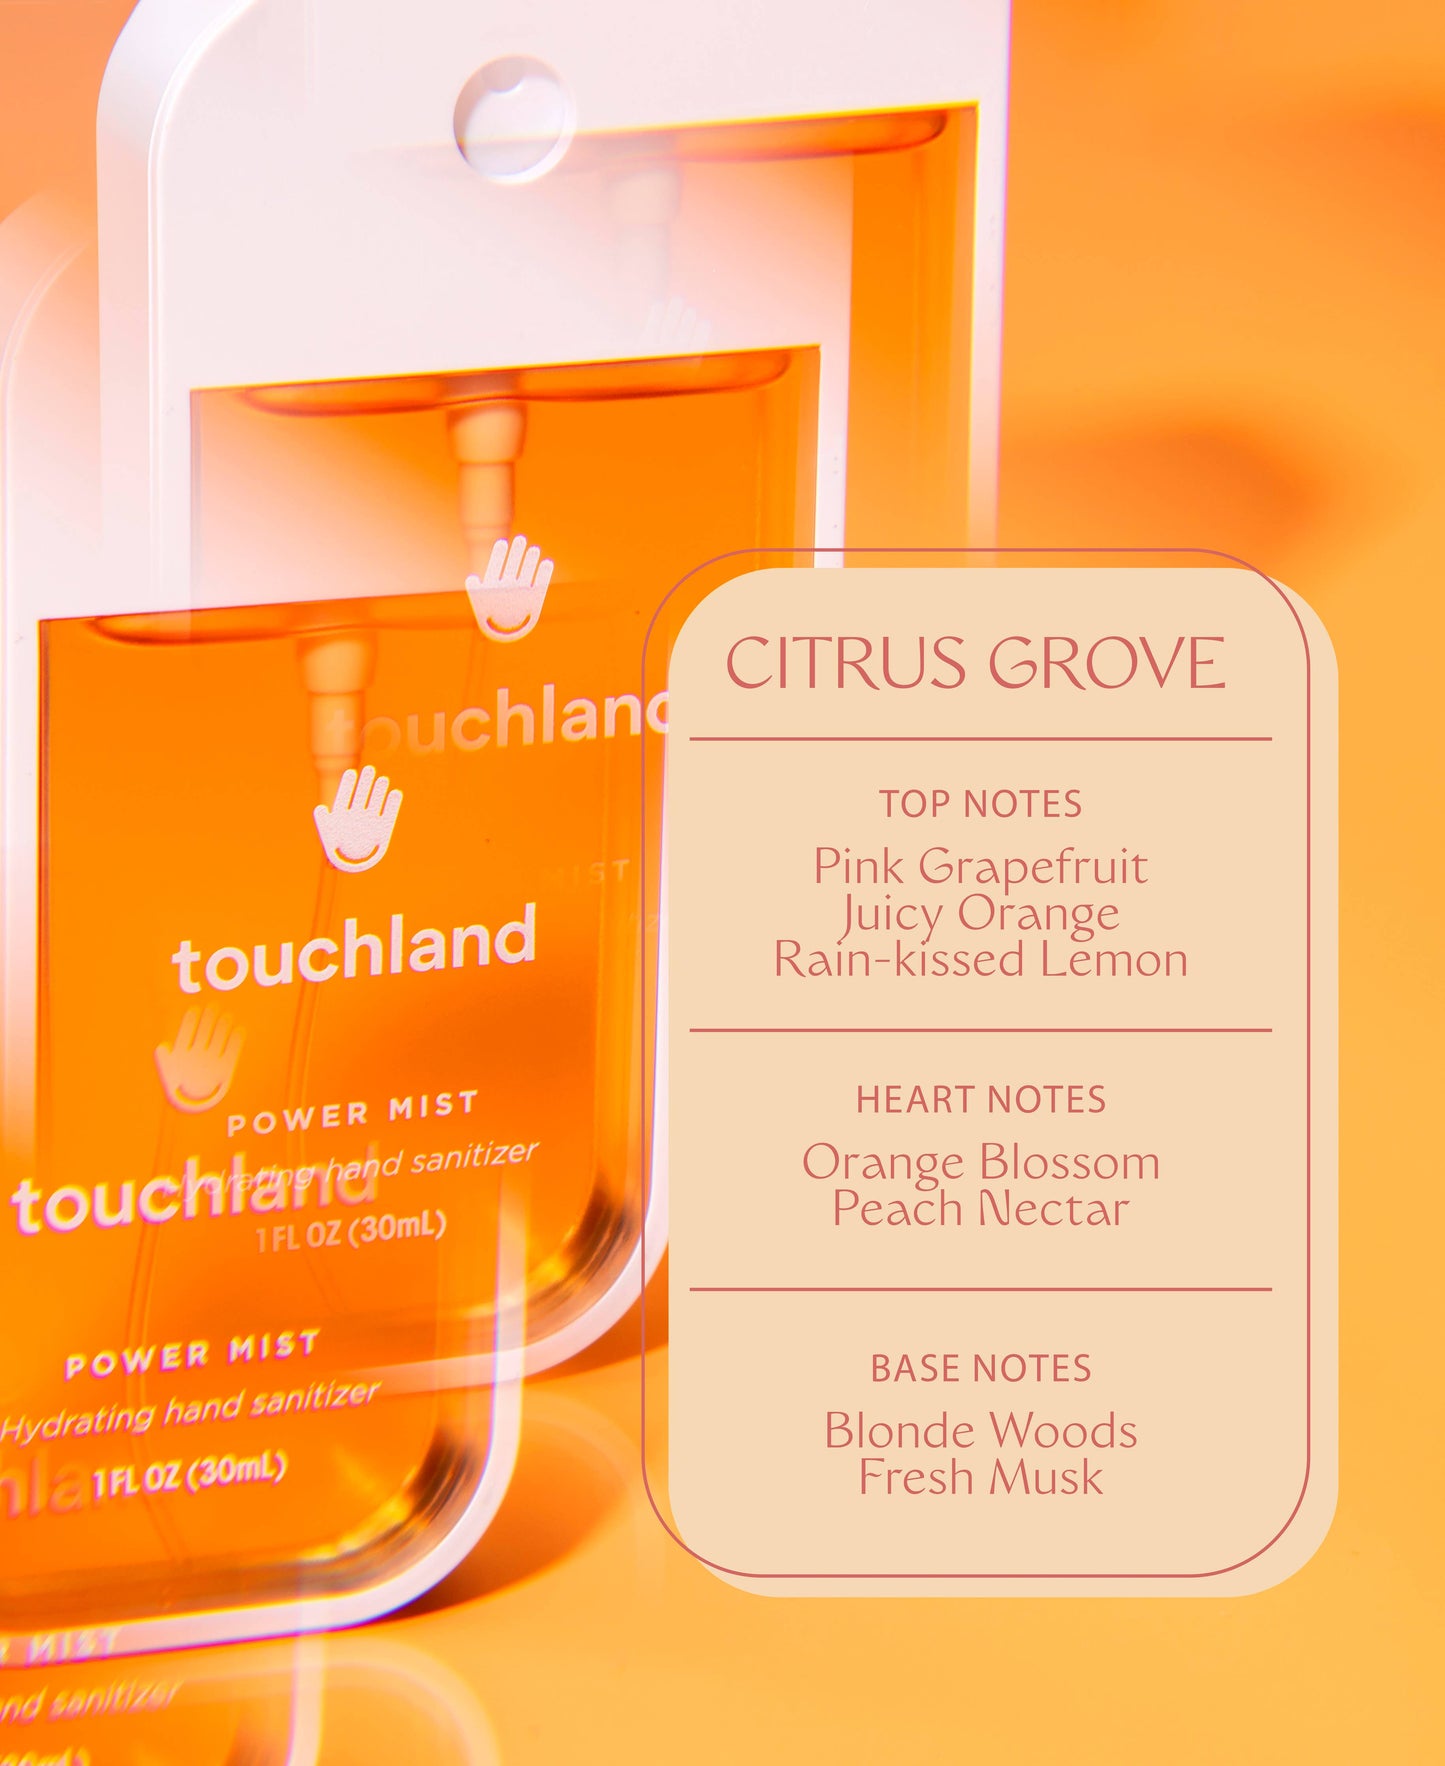 Touchland - Power Mist Citrus Grove